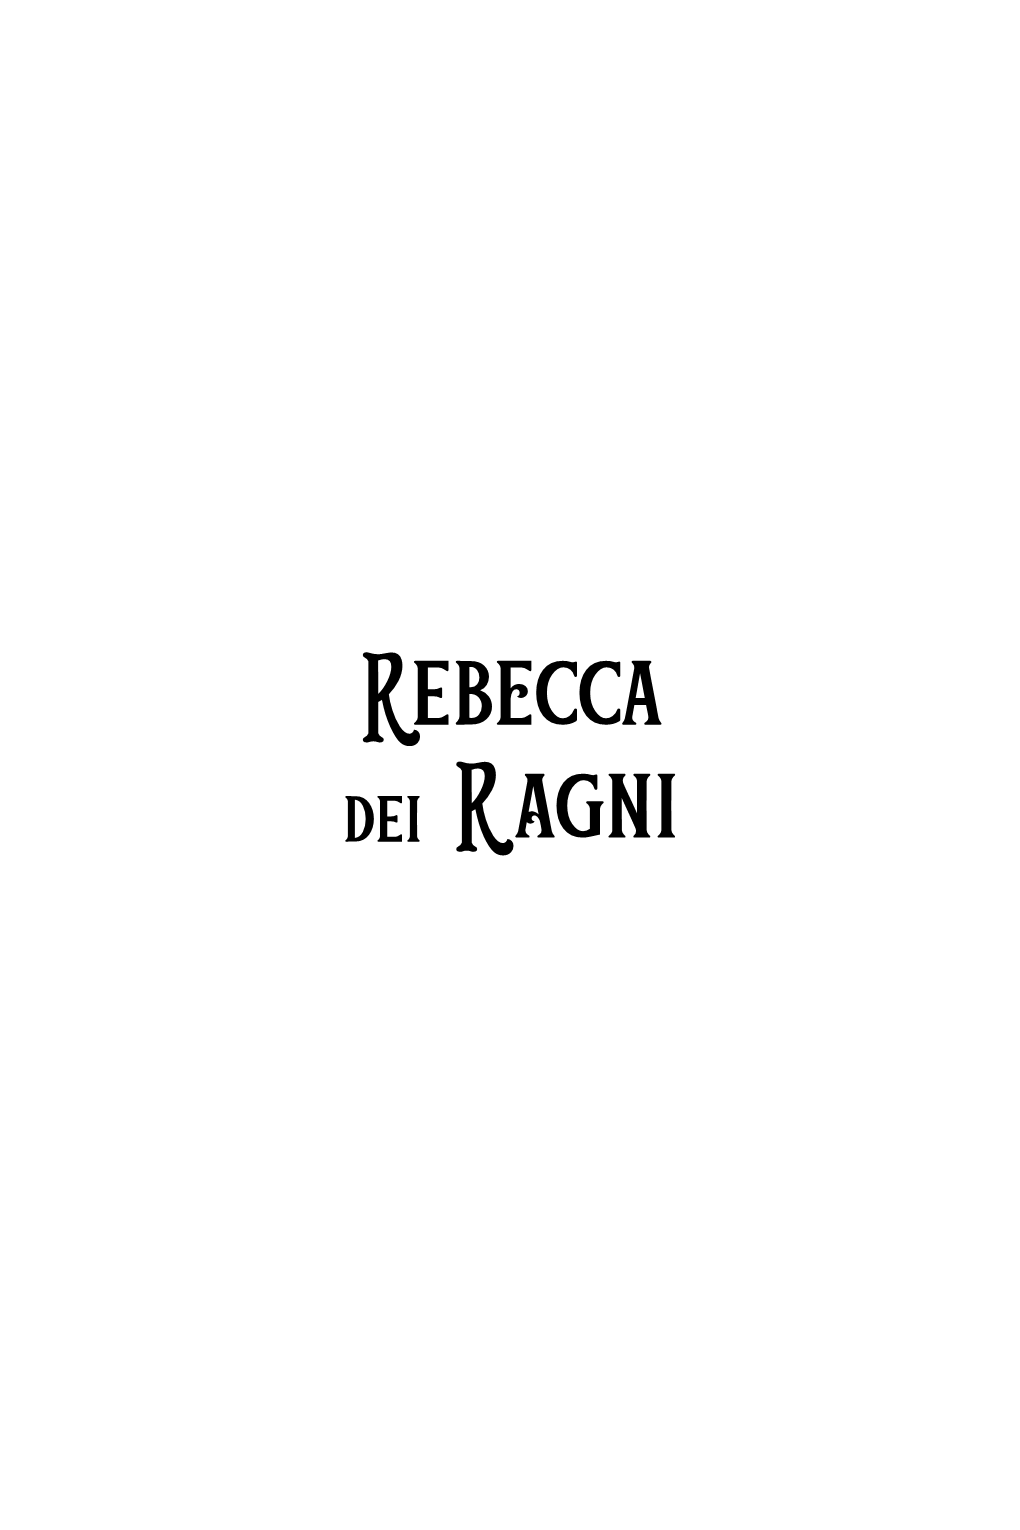 Rebecca Dei Ragni Olivia Corio Editrice Il Castoro È Socia Di IBBY Italia Leggere Per Crescere Liberi Rebecca Dei Ragni